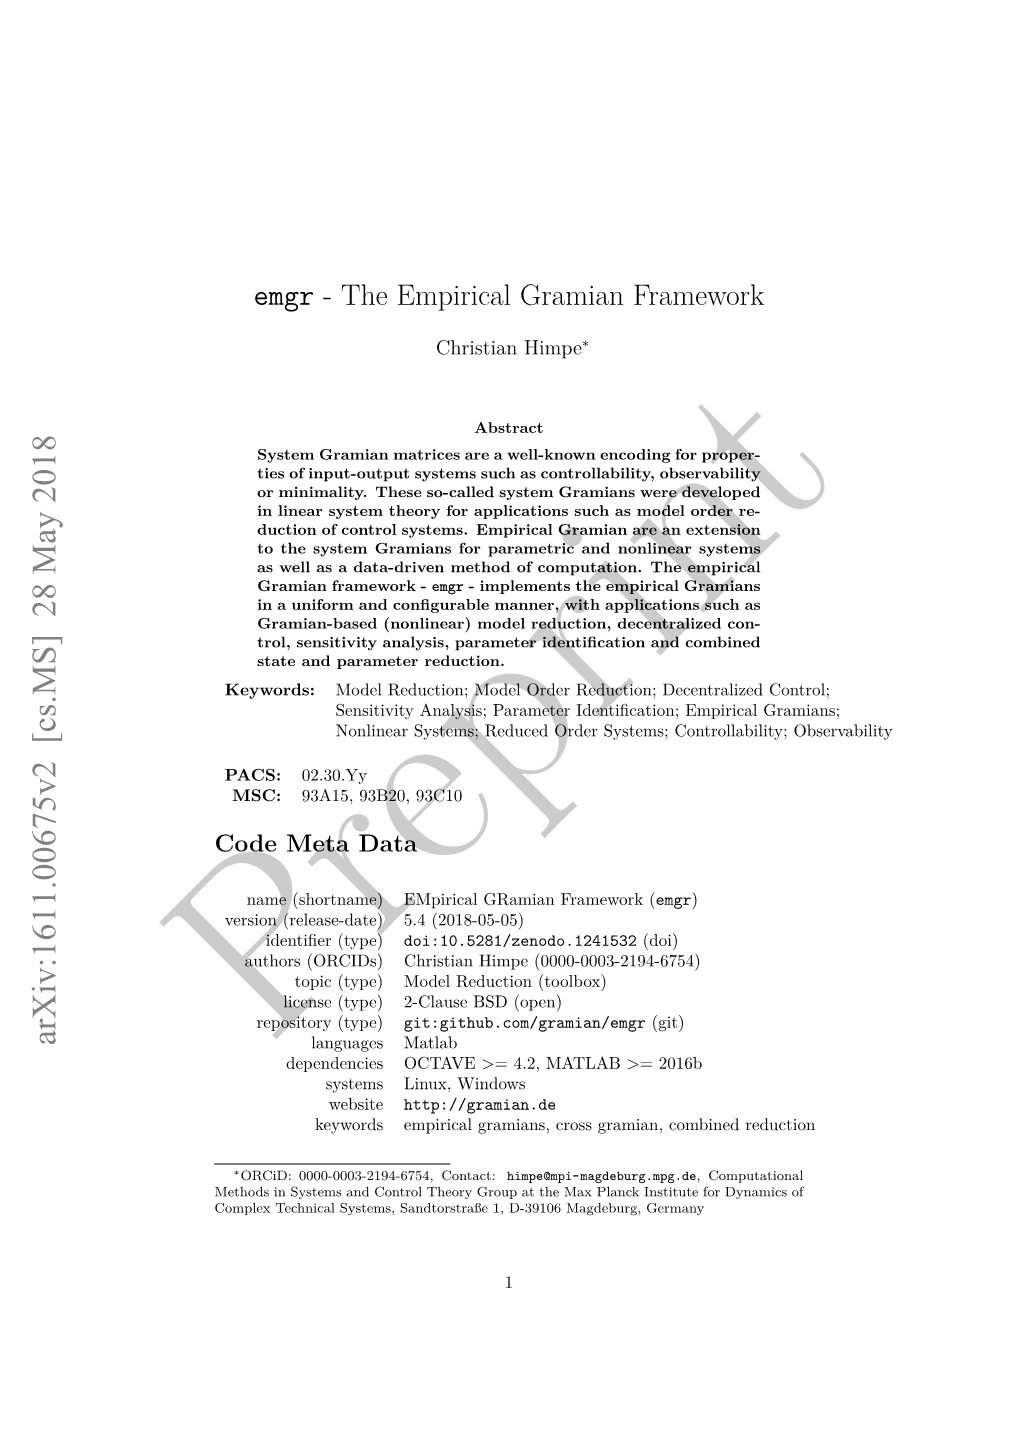 Emgr - the Empirical Gramian Framework